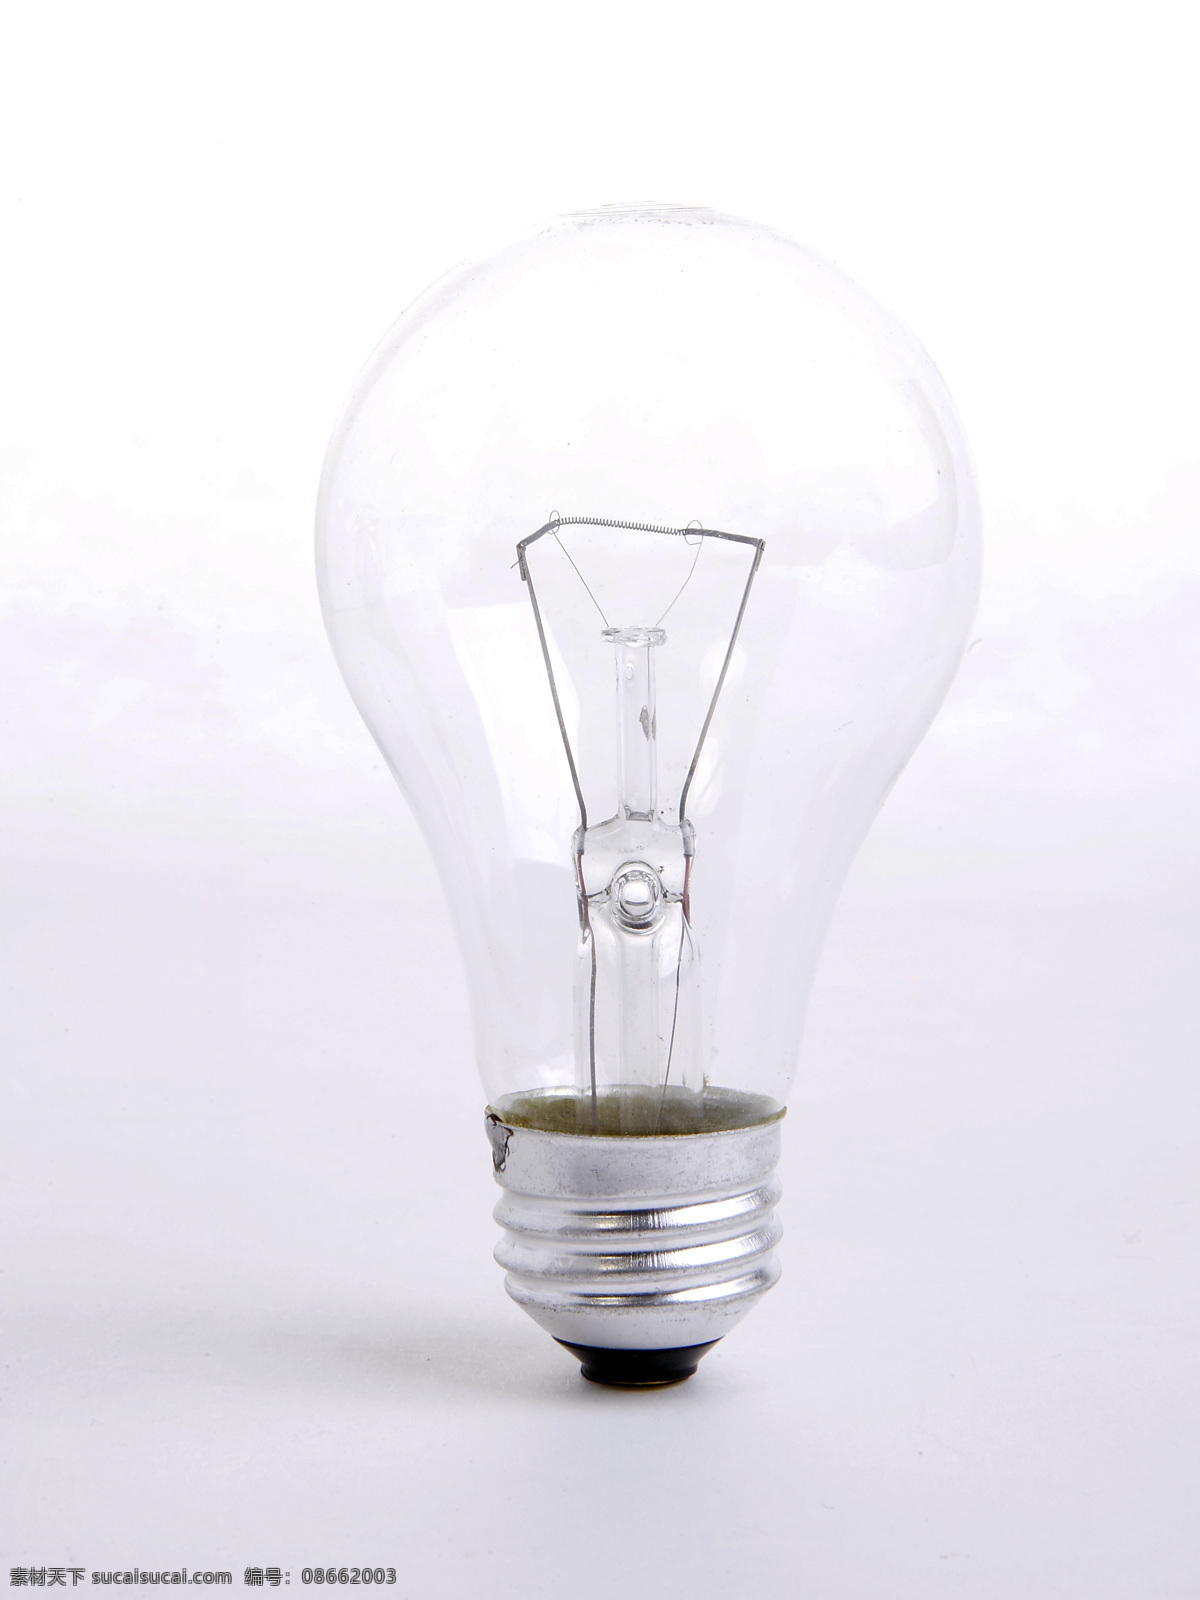 灯泡免费下载 白炽灯 灯泡 节能环保 生活百科 钨丝灯泡 能源节能环保 家居装饰素材 灯饰素材